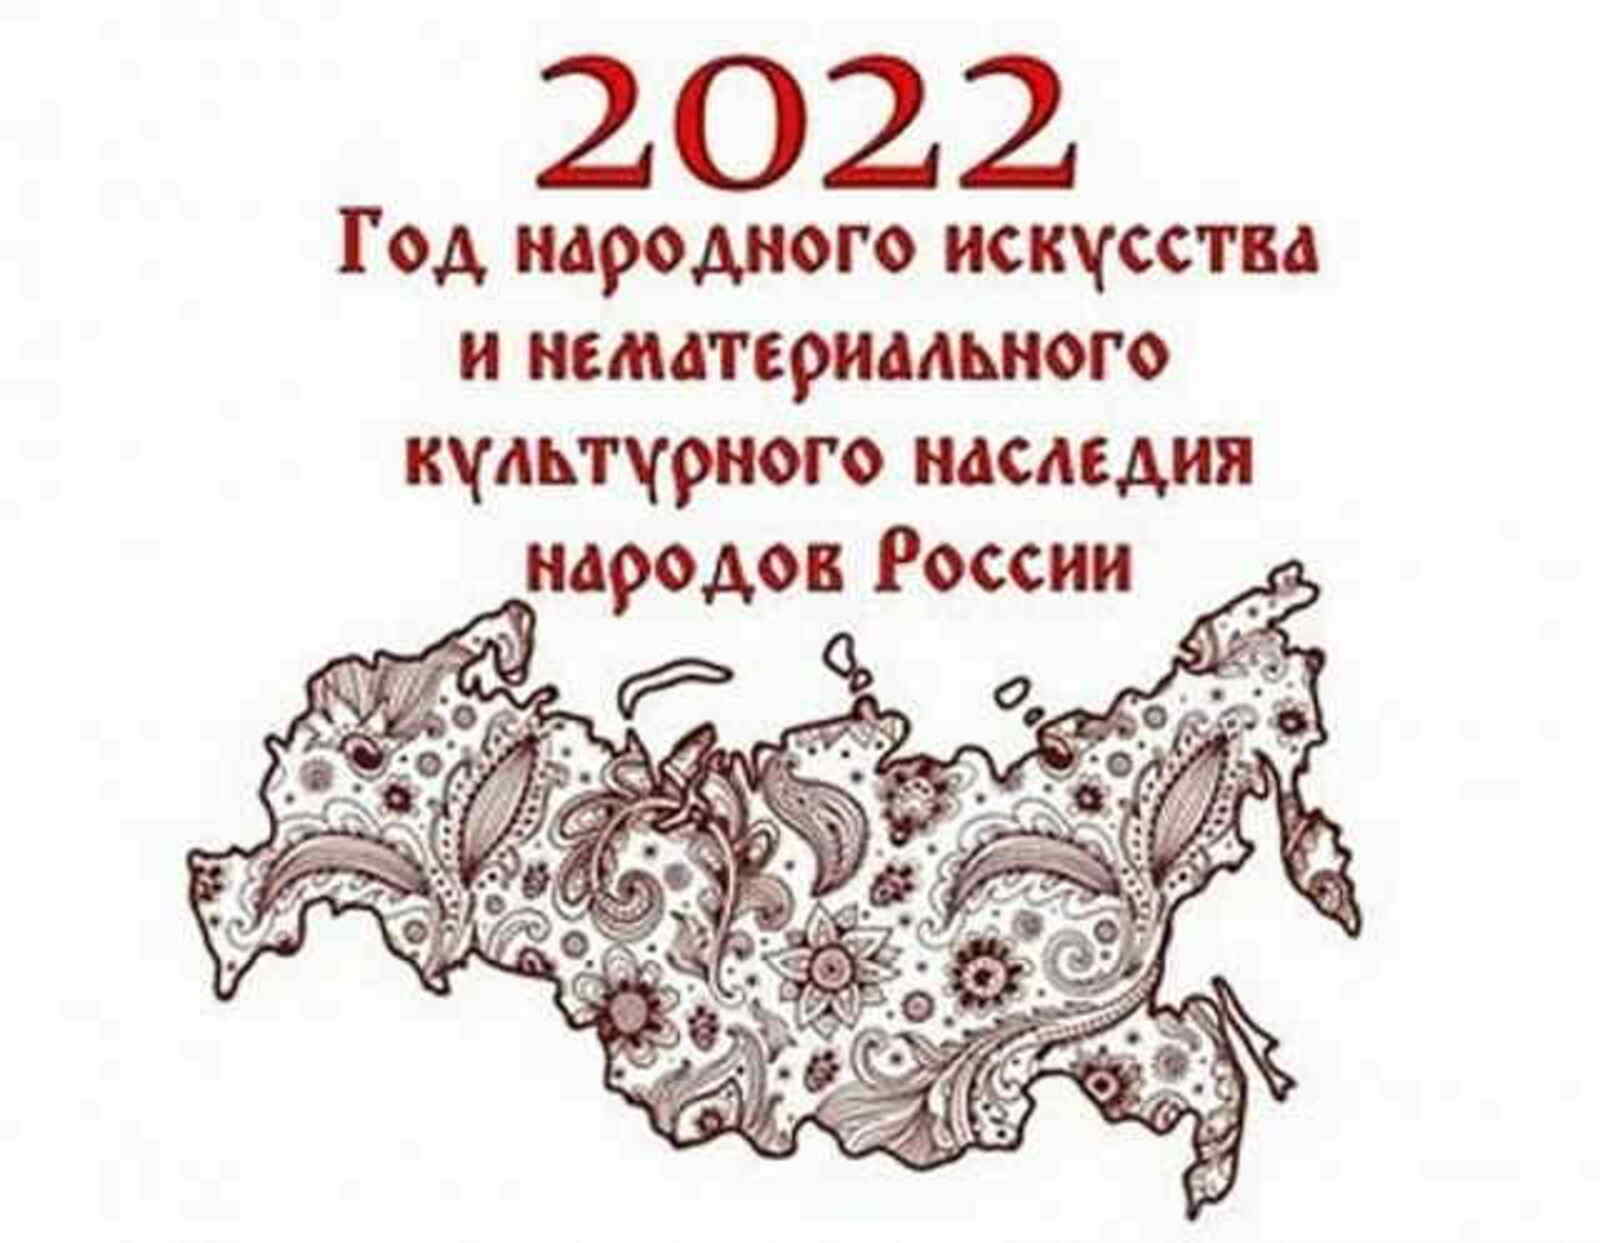 2022 – Год культурного наследия народов России